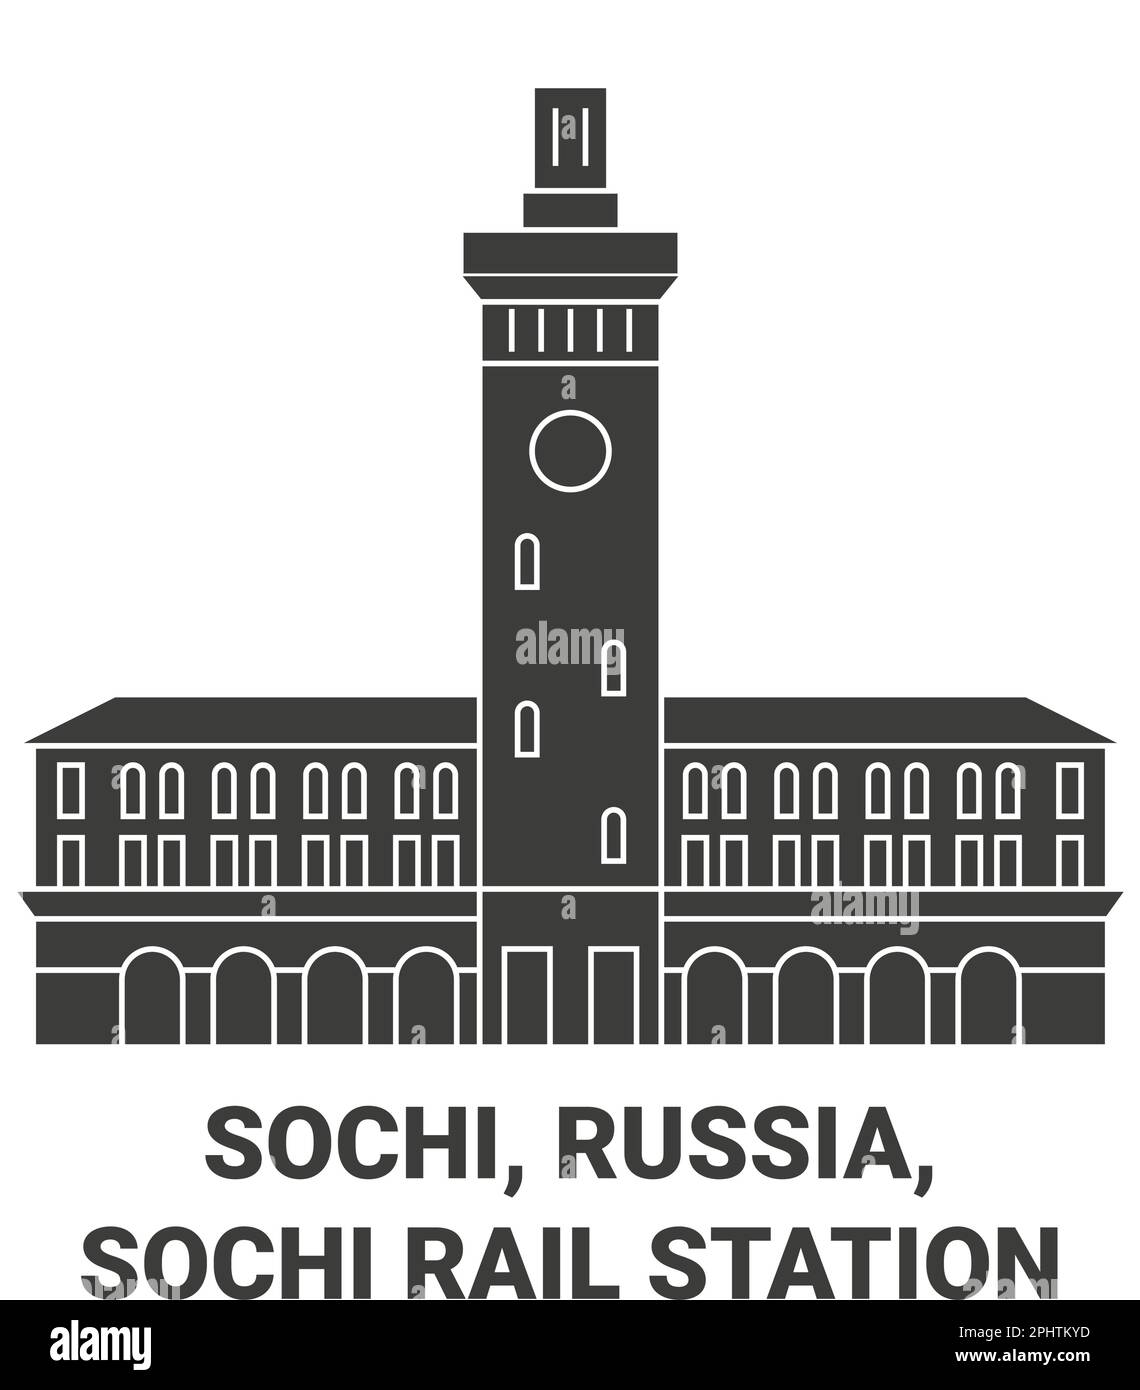 Russia, Sochi, Sochi Rail Station travel landmark vector illustration Stock Vector